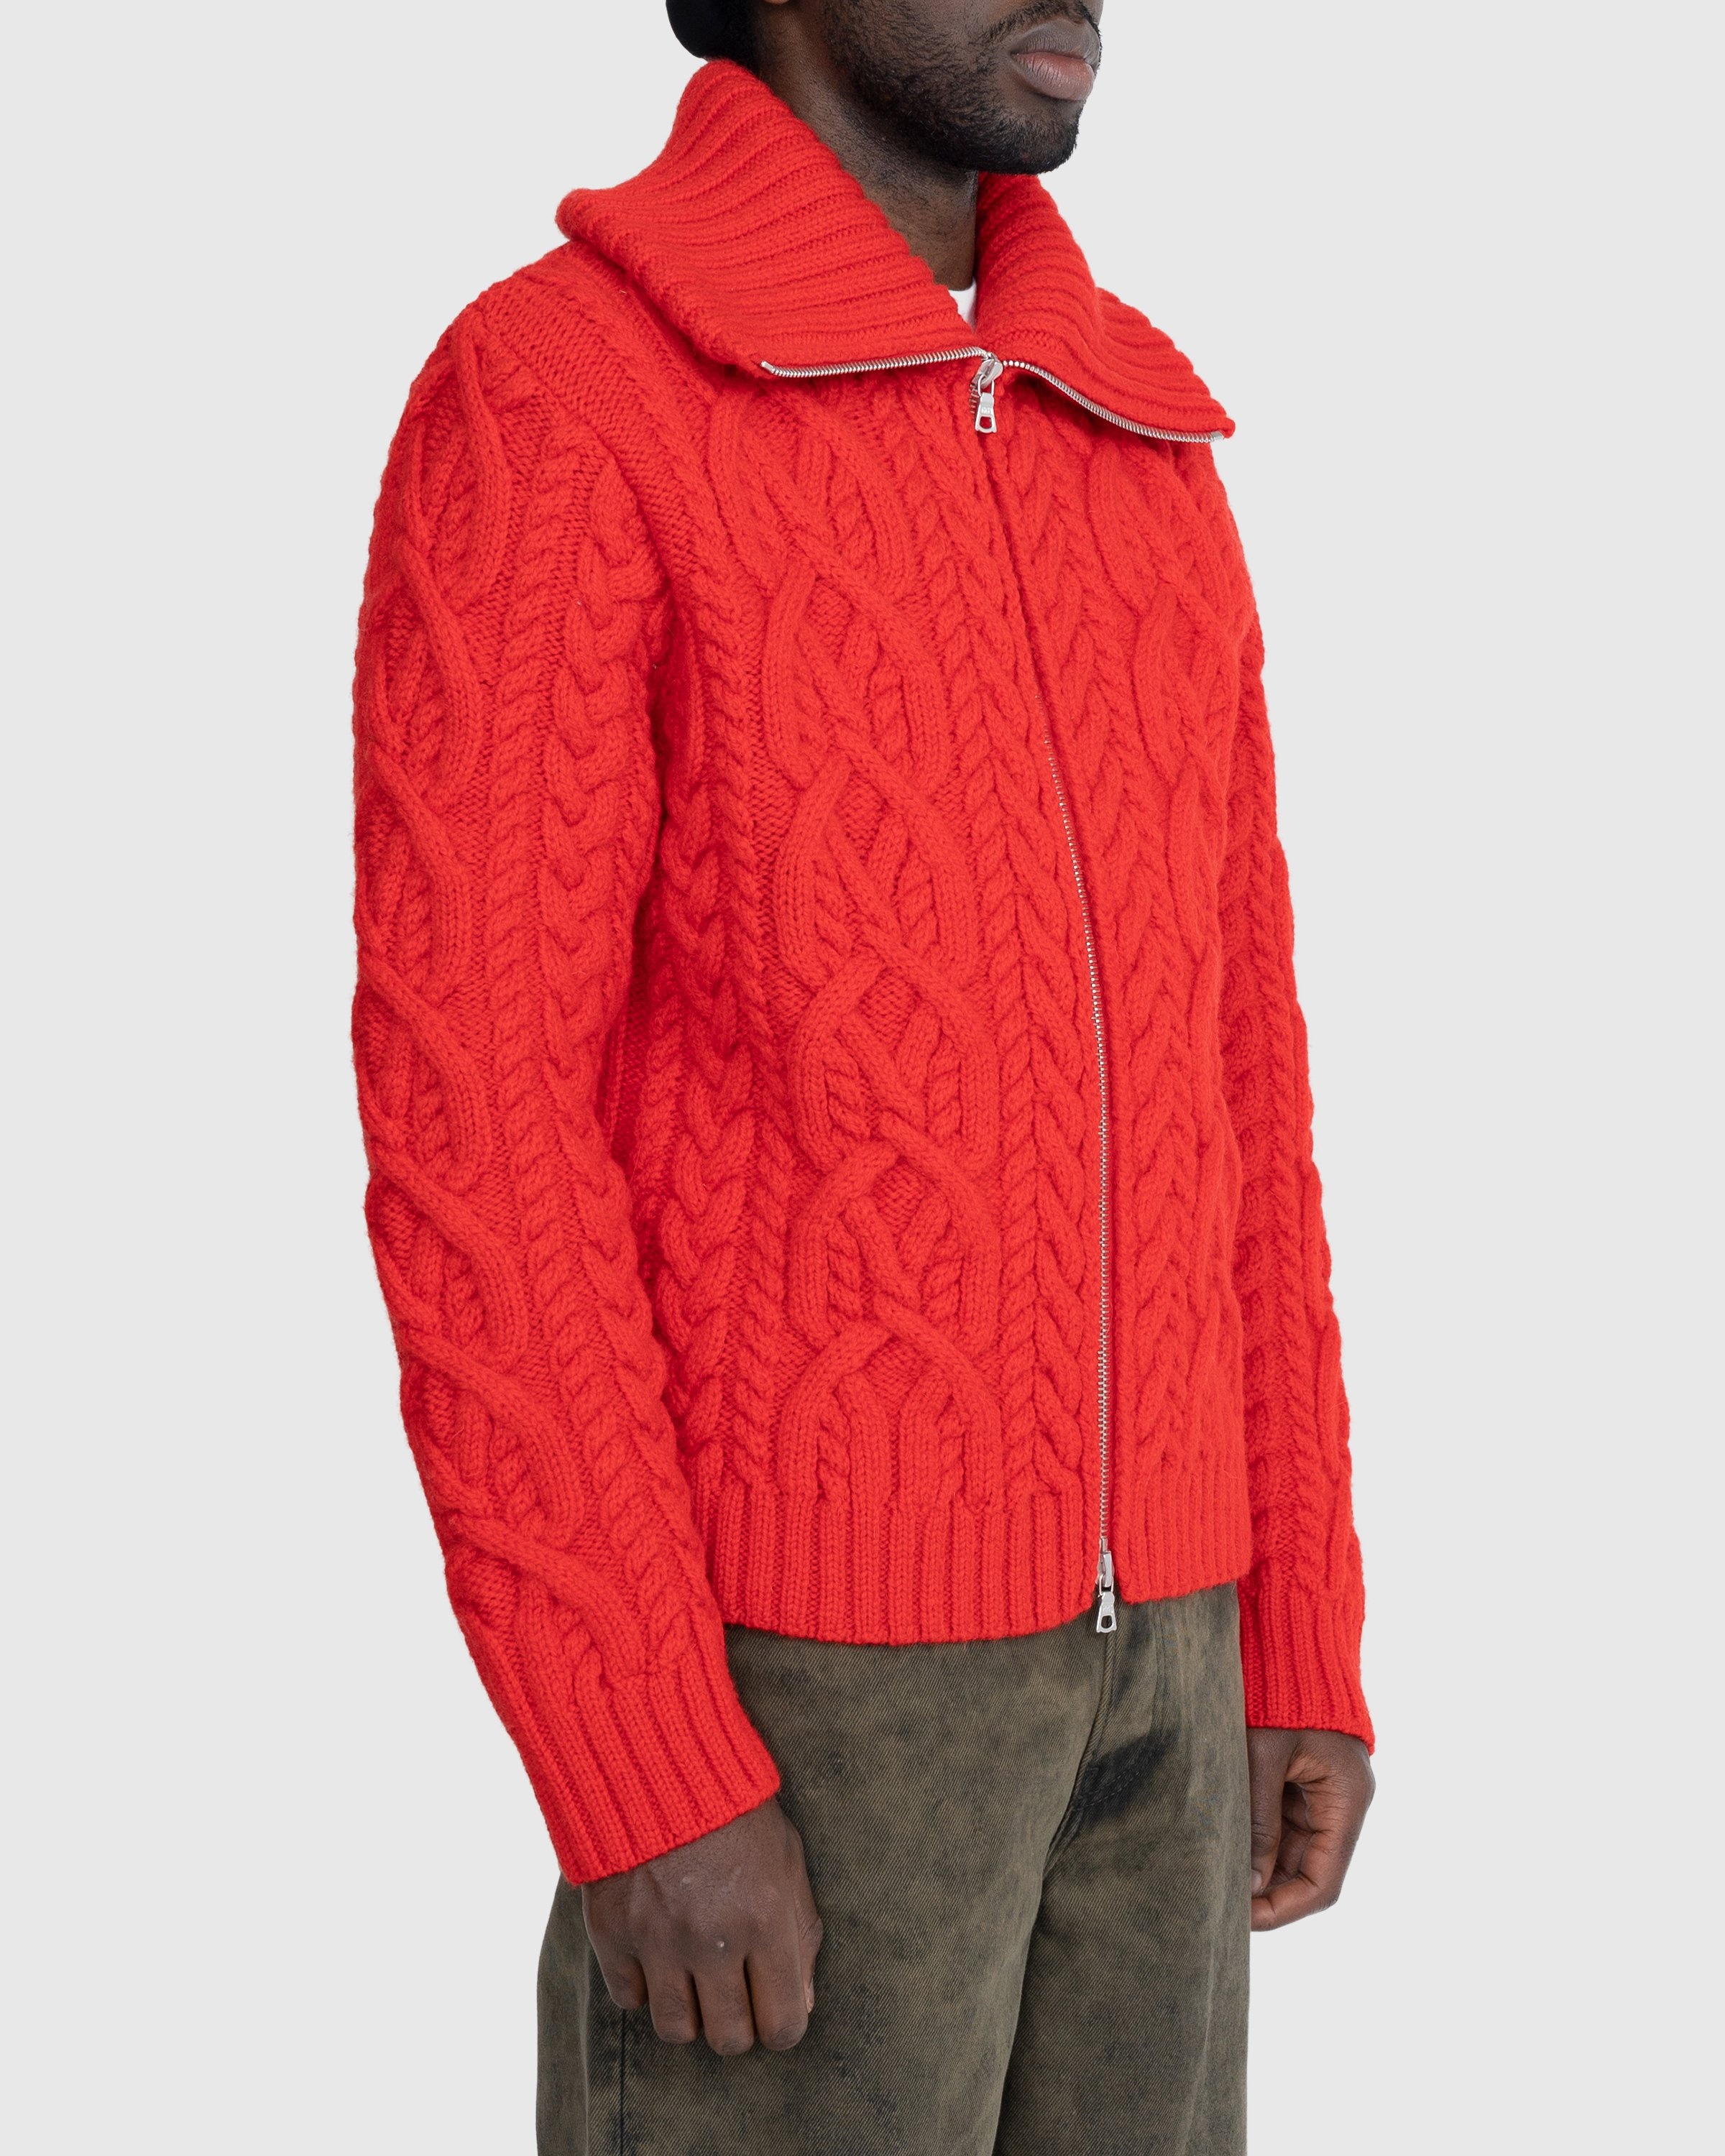 Dries van Noten – Naldo Cardigan Red - Knitwear - Red - Image 3